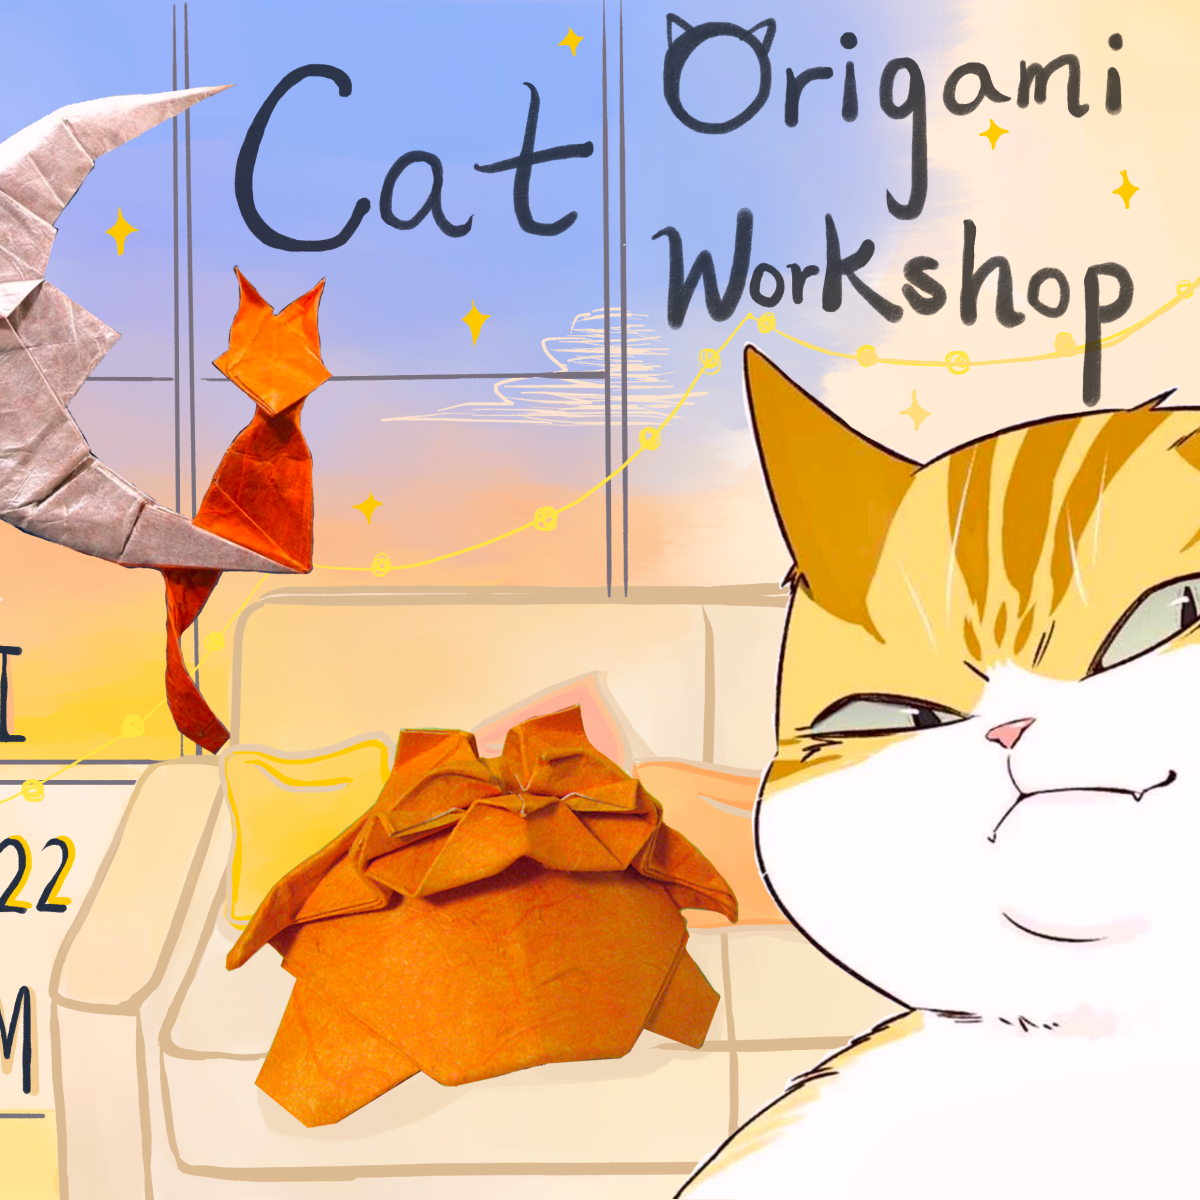 Cat Origami Workshop! ^>ܫ< ^